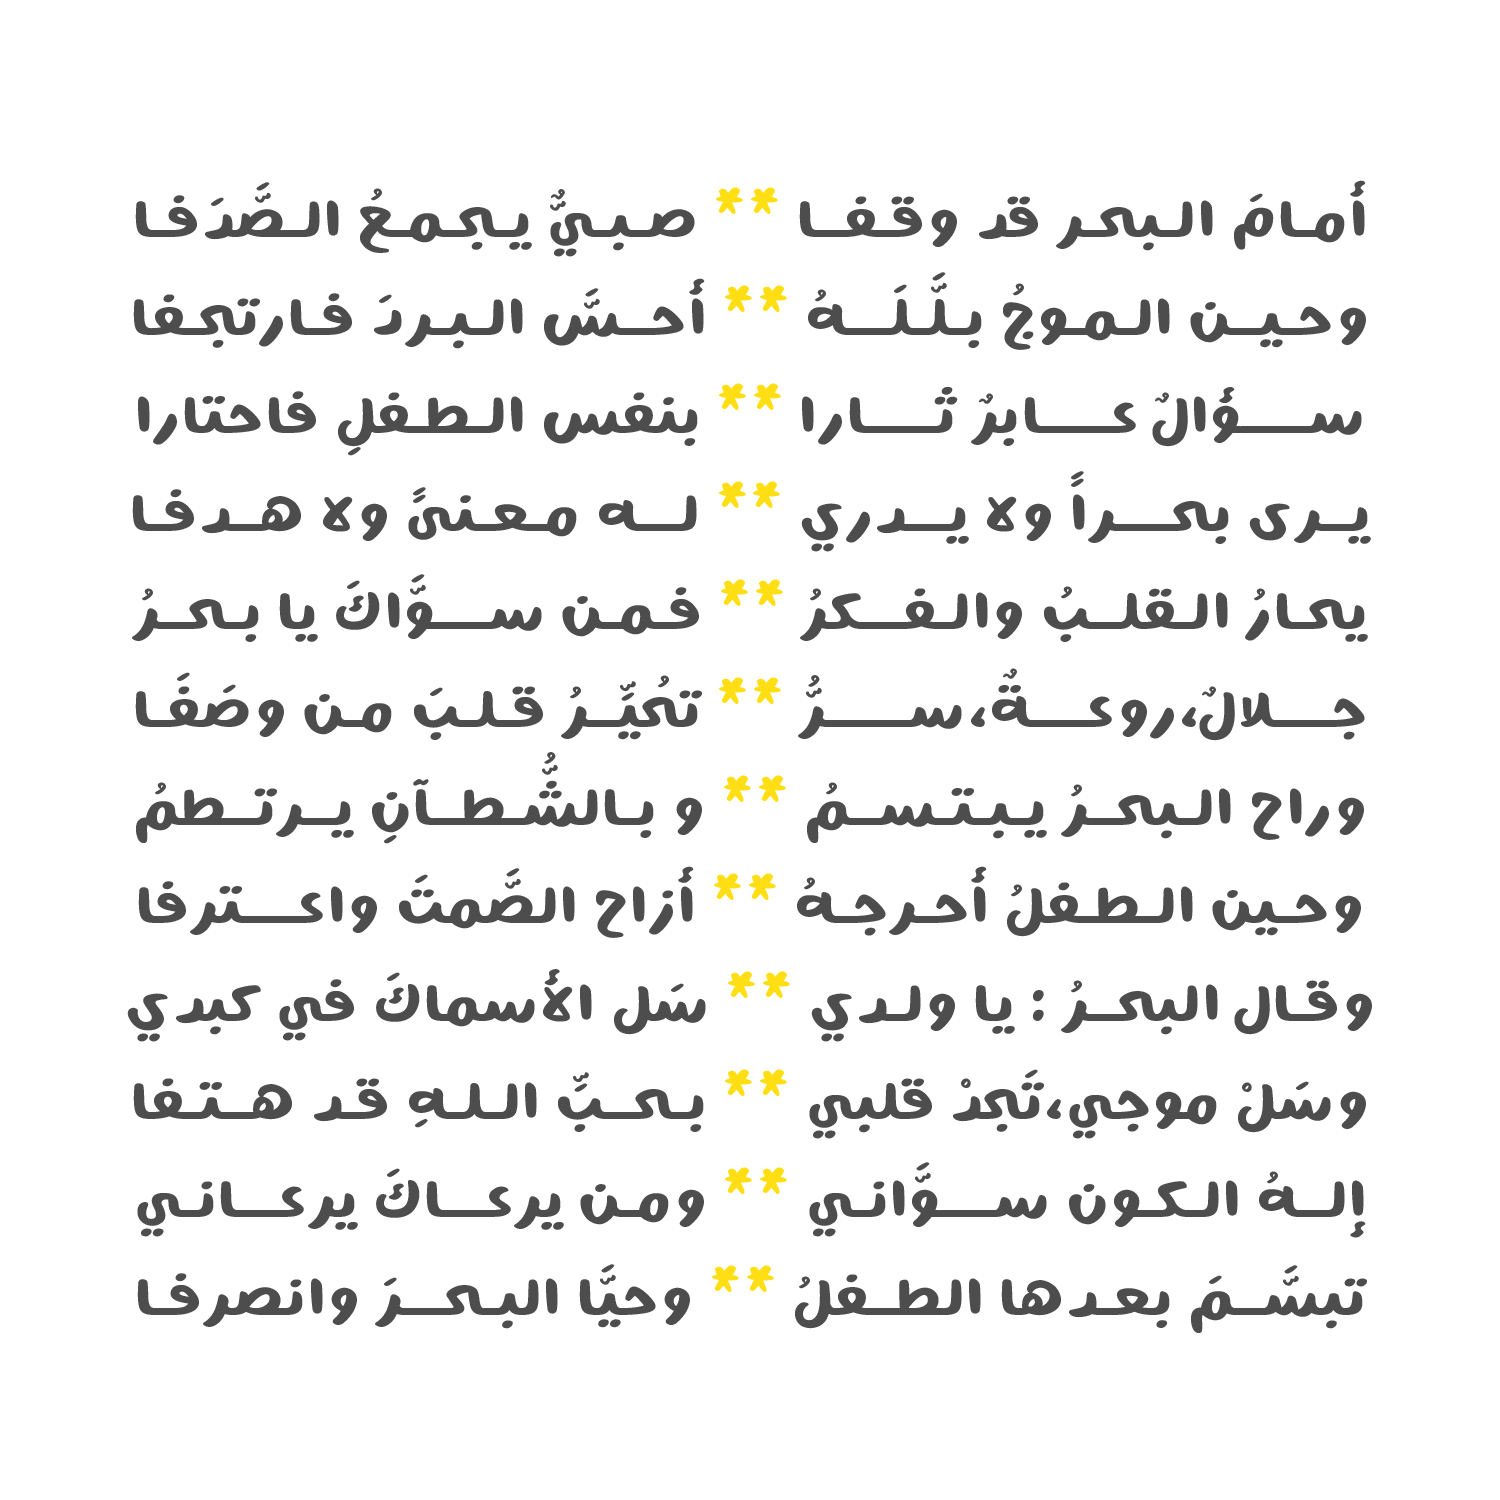 Malmoom Free Font - arabic